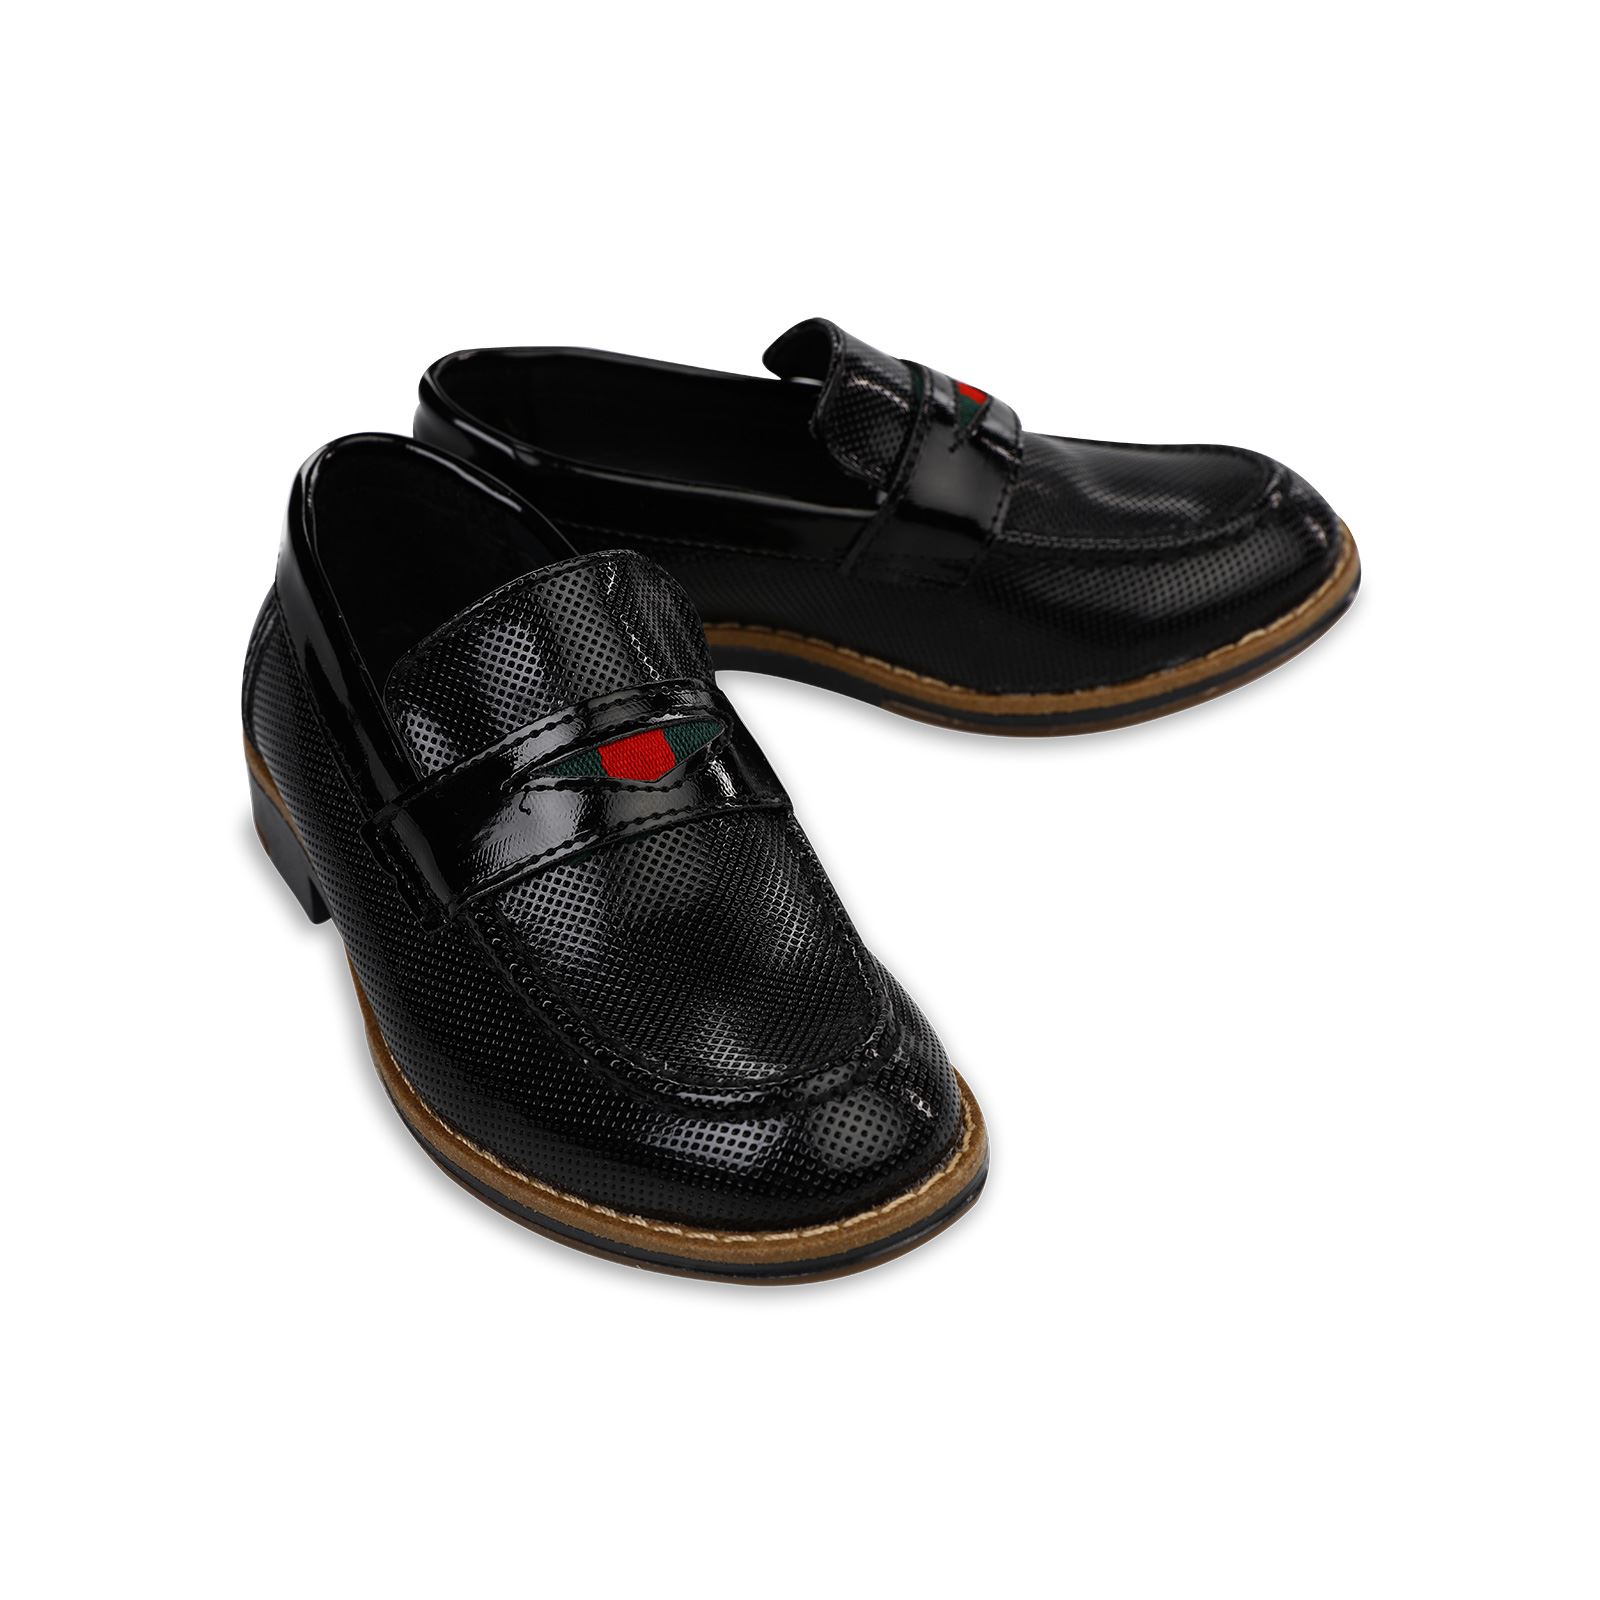 Harli Erkek Çocuk Klasik Ayakkabı 31-35 Numara Siyah